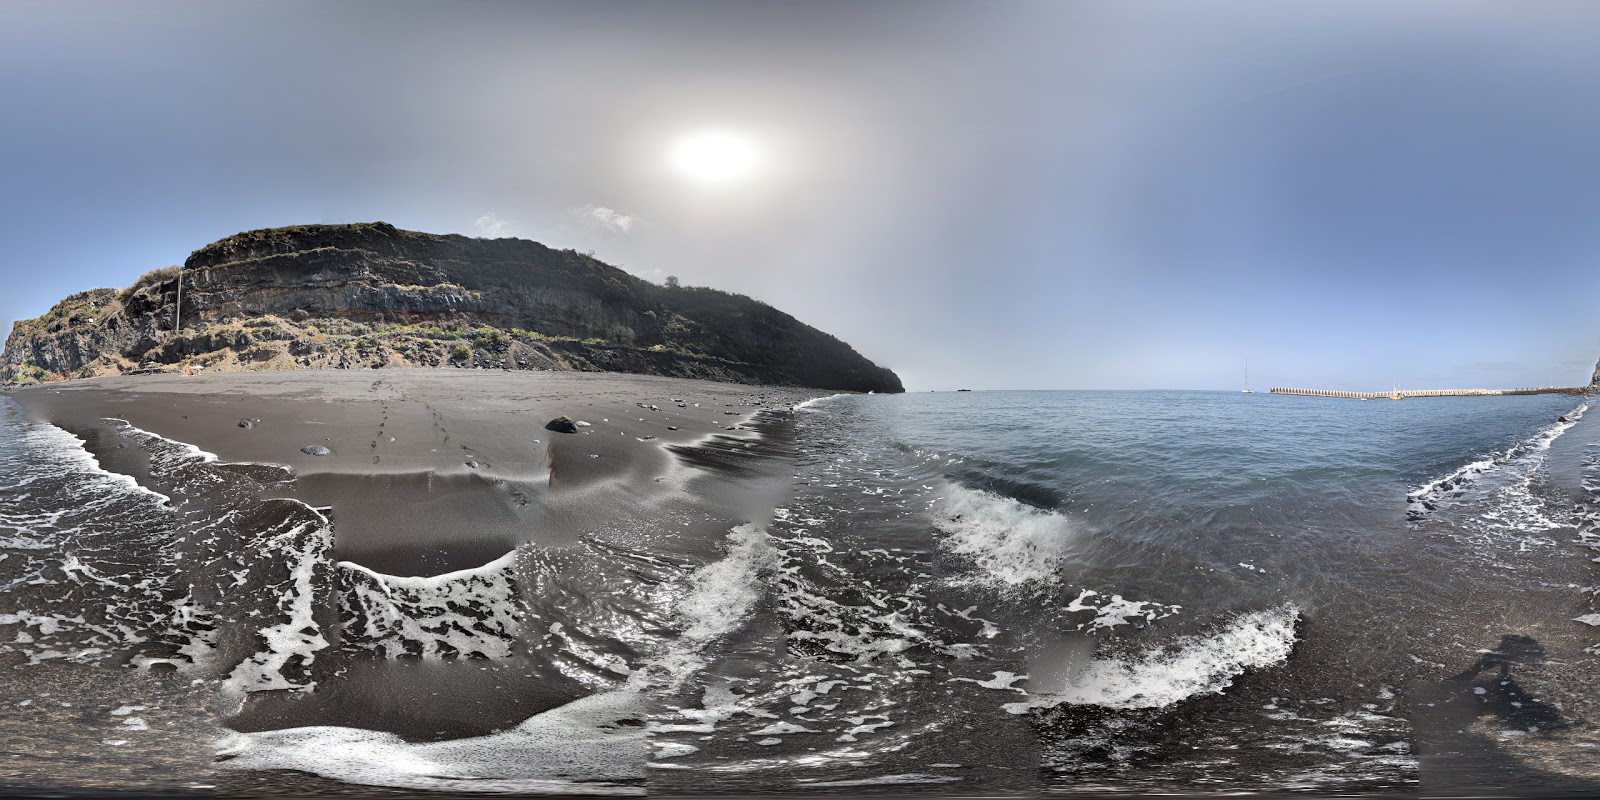 Fotografija Tazacorte beach z črni pesek površino